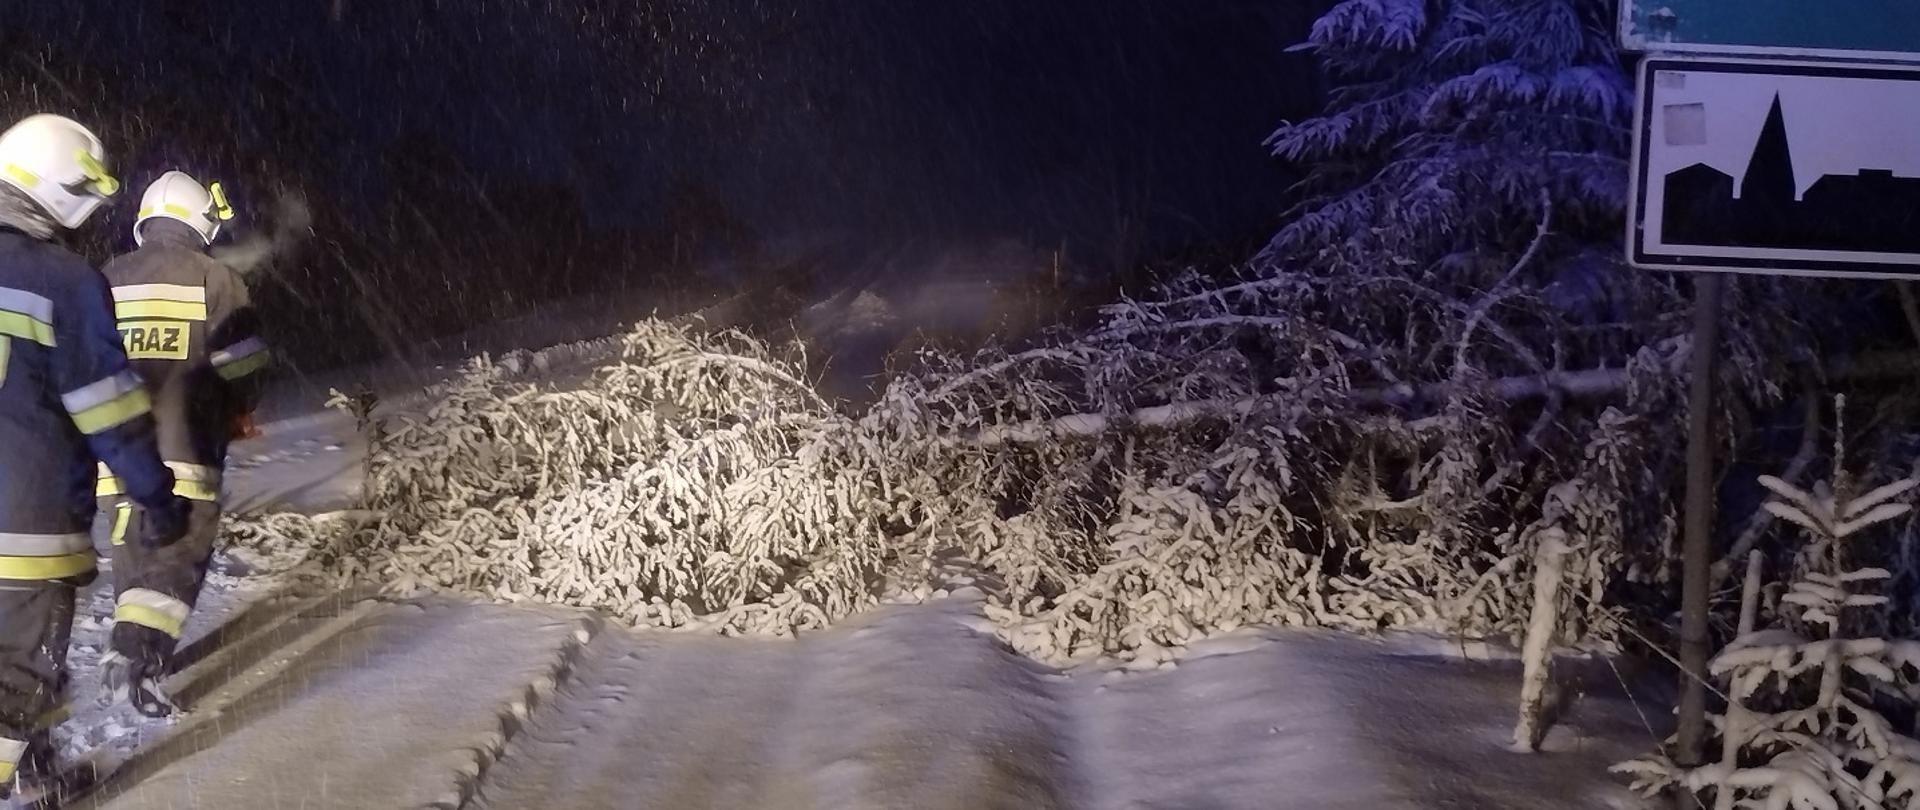 Zdjęcie obrazuje powalone drzewo dwóch strażaków śnieg zalegający na drodze i drzewach oraz znak teren zabudowany 